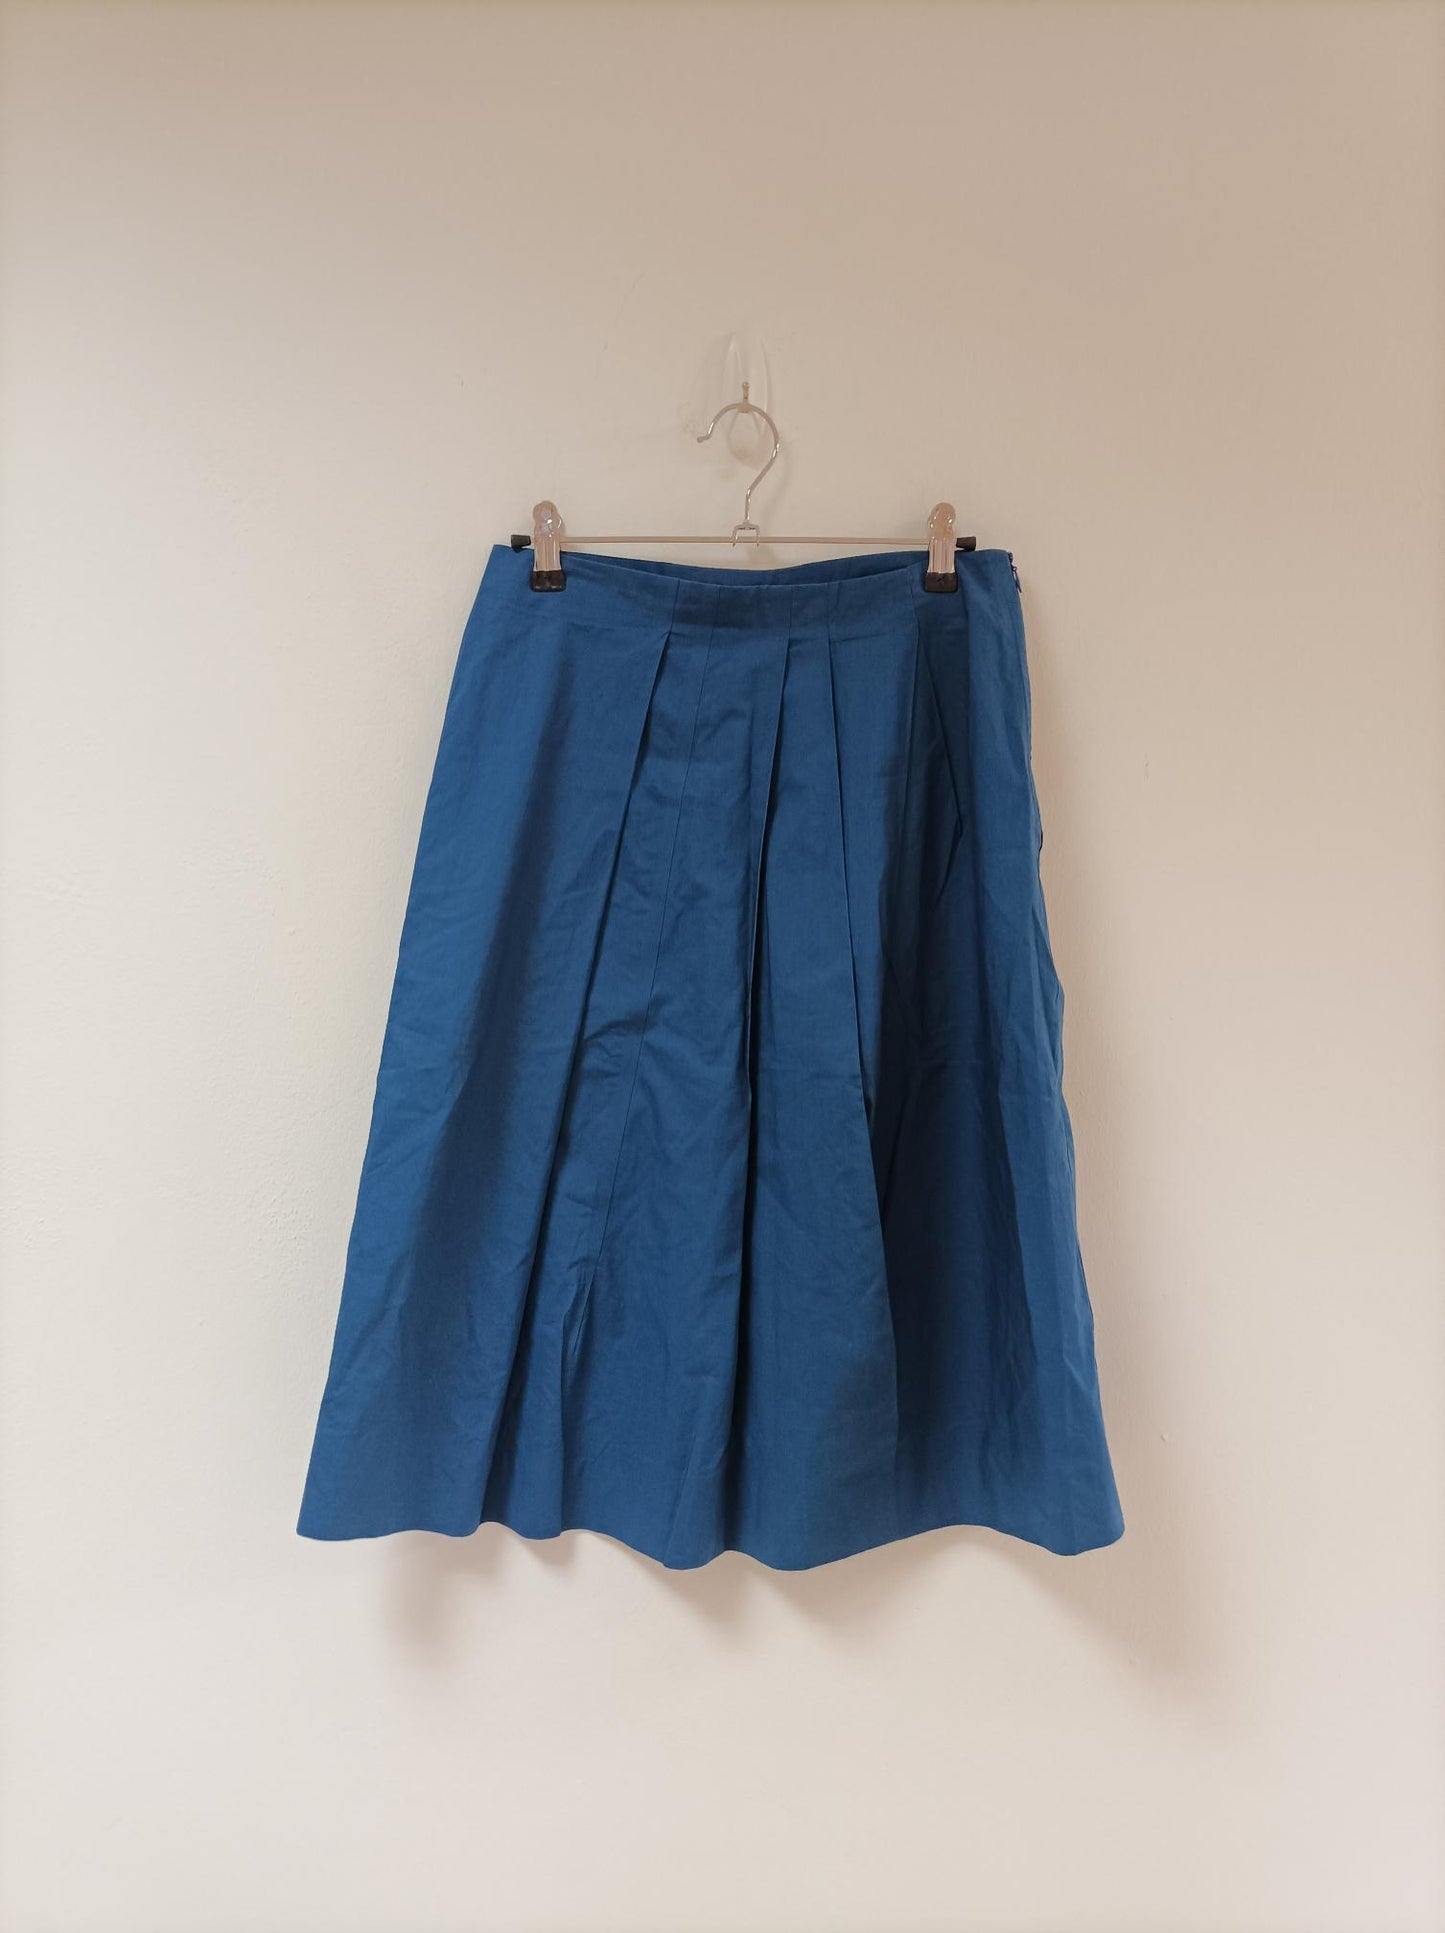 Blue Pleated Midi Skirt, Marni, Size 10 - Damaged Item Sale